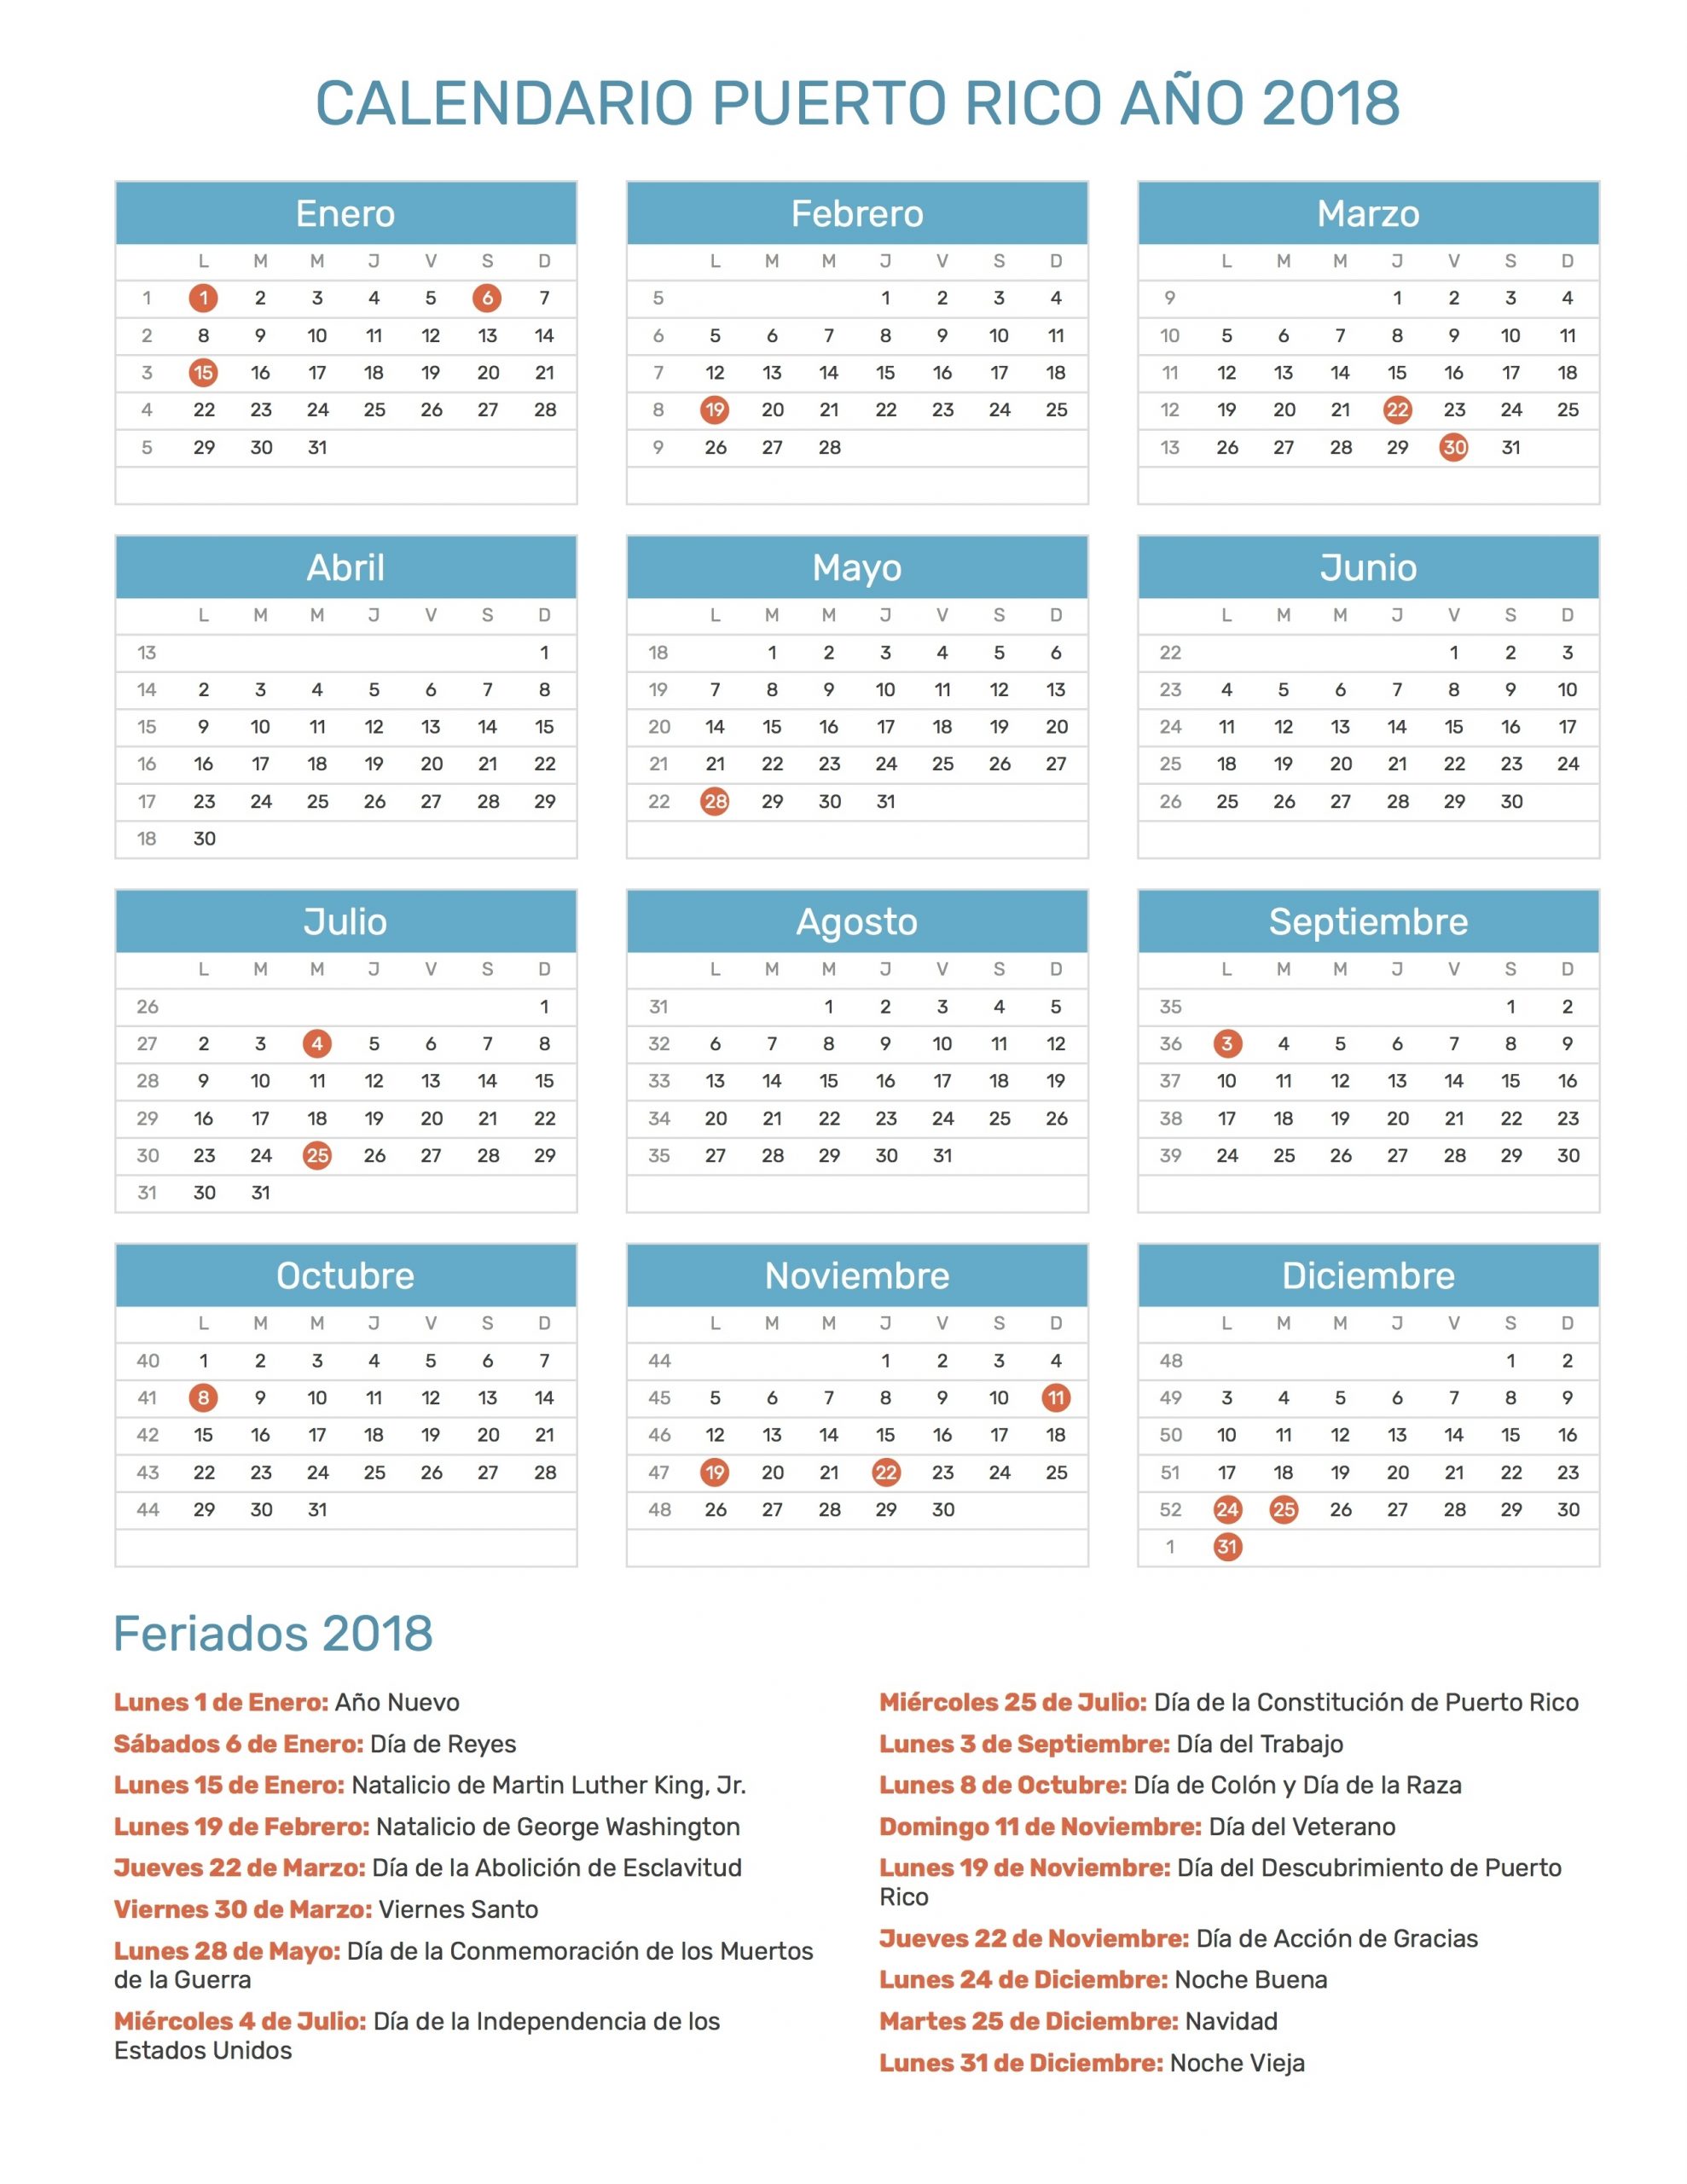 Calendario De Puerto Rico Año 2018 | Feriados